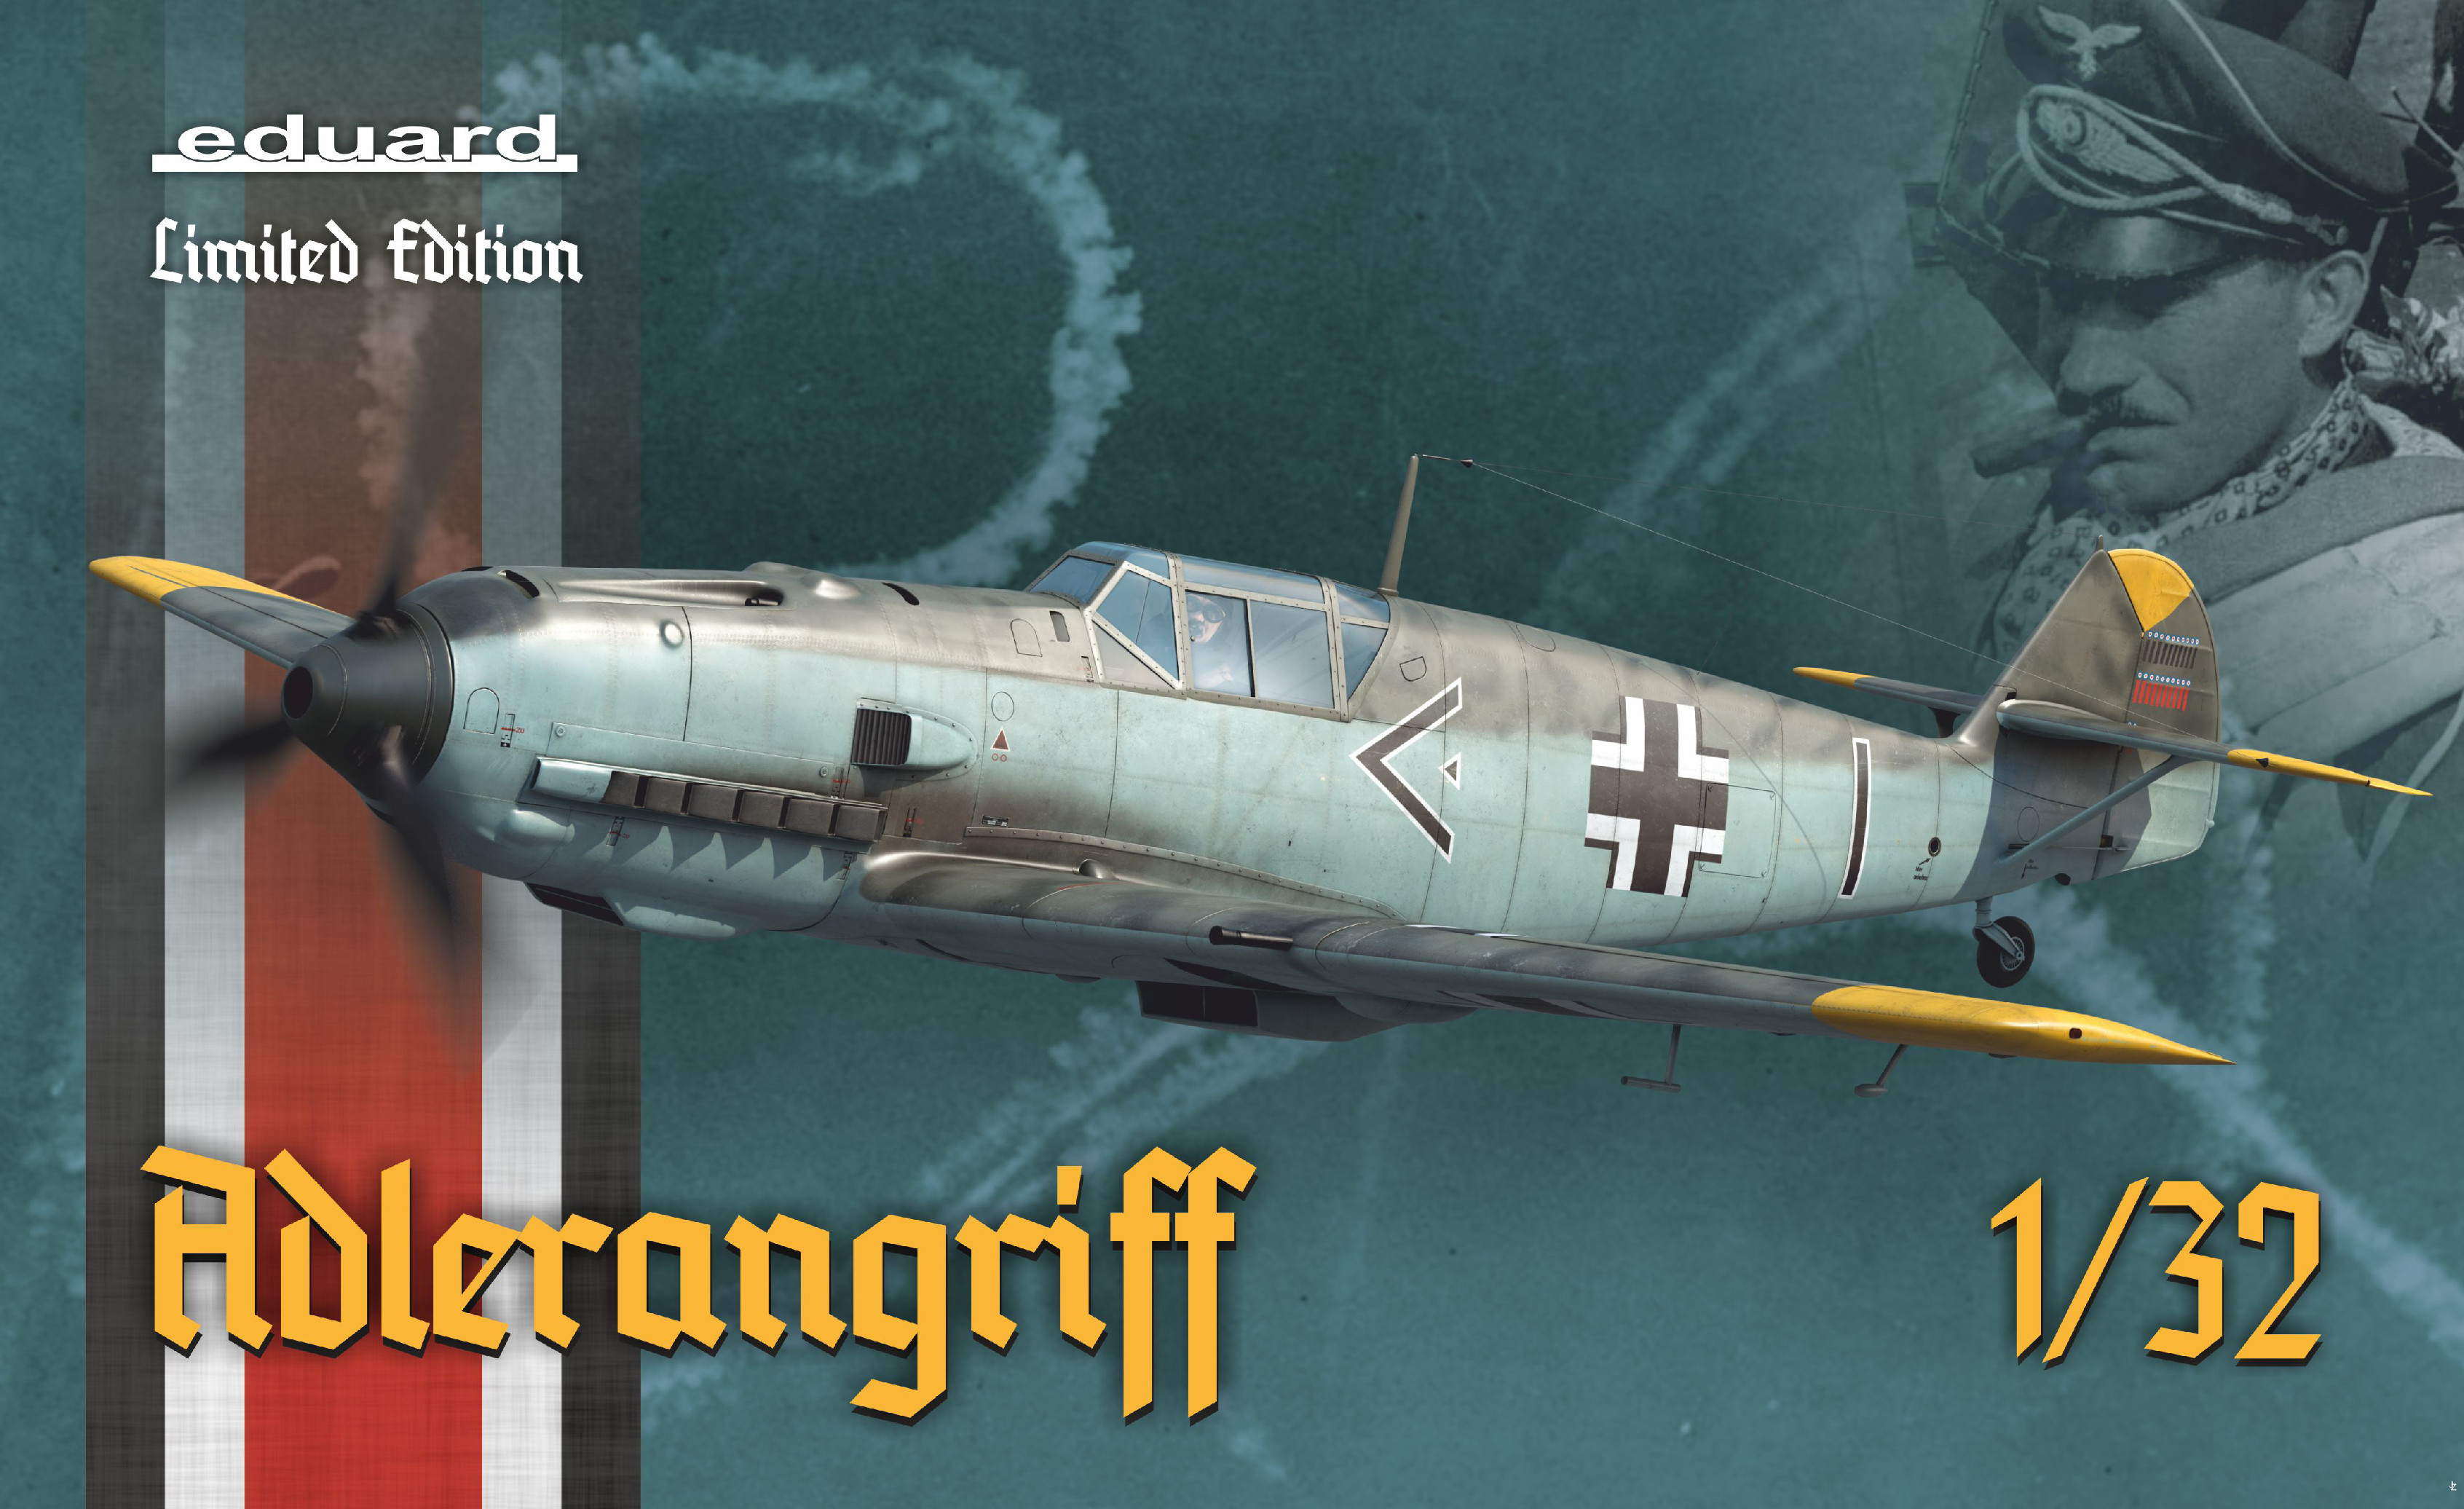 Fotografie 1/32 ADLERANGRIFF - Bf 109E v bitvě o Británii - Bf 109 E-1, 3, 4 a 4/B (Limited Edition) (11107)